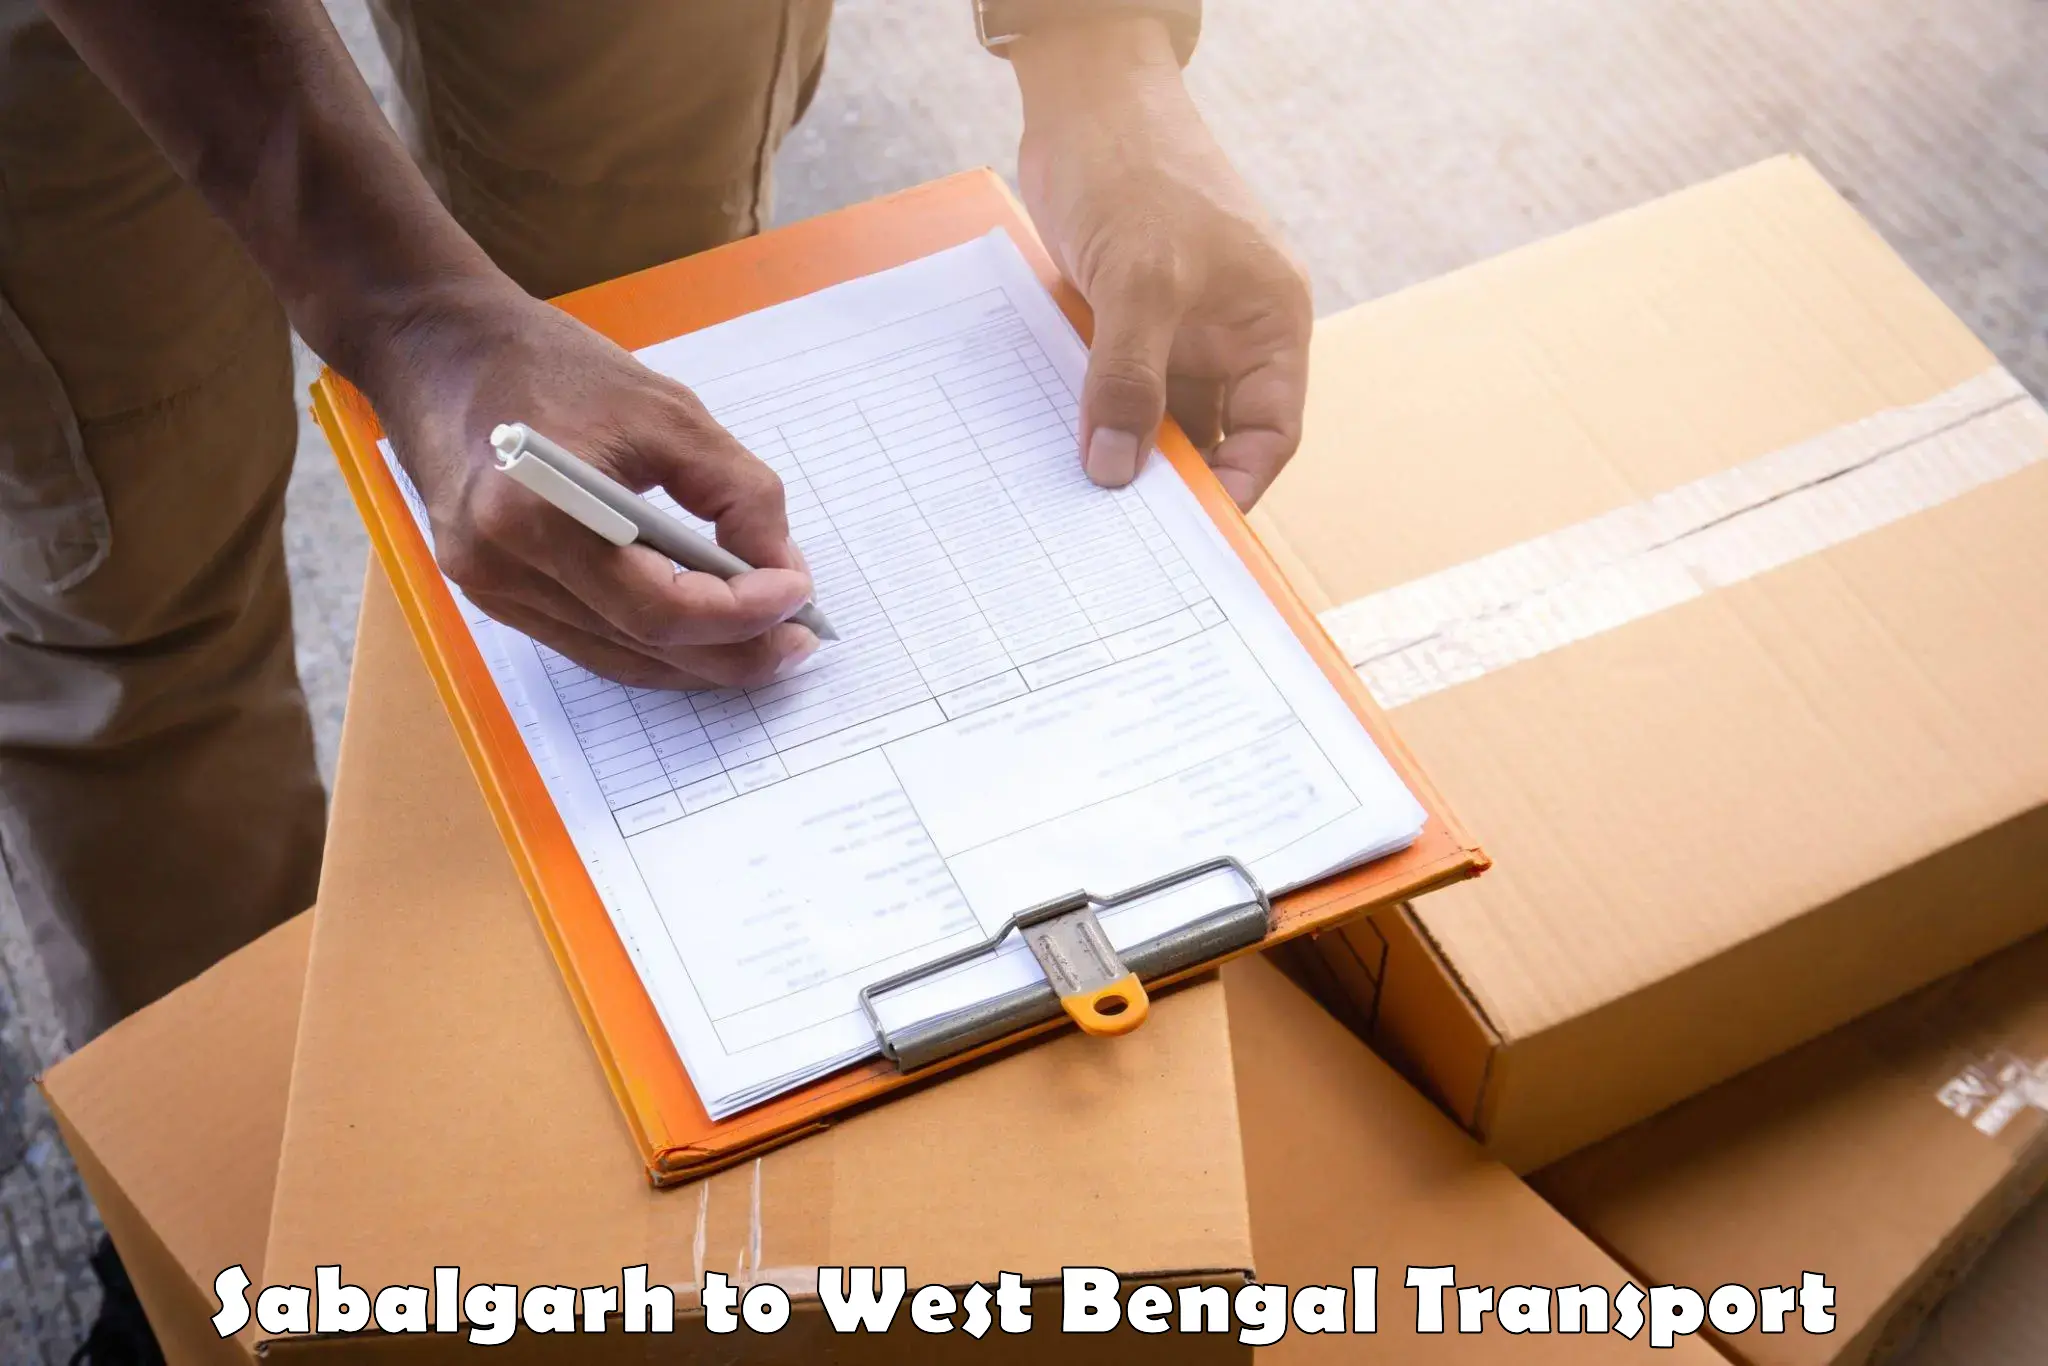 Shipping partner Sabalgarh to Siliguri